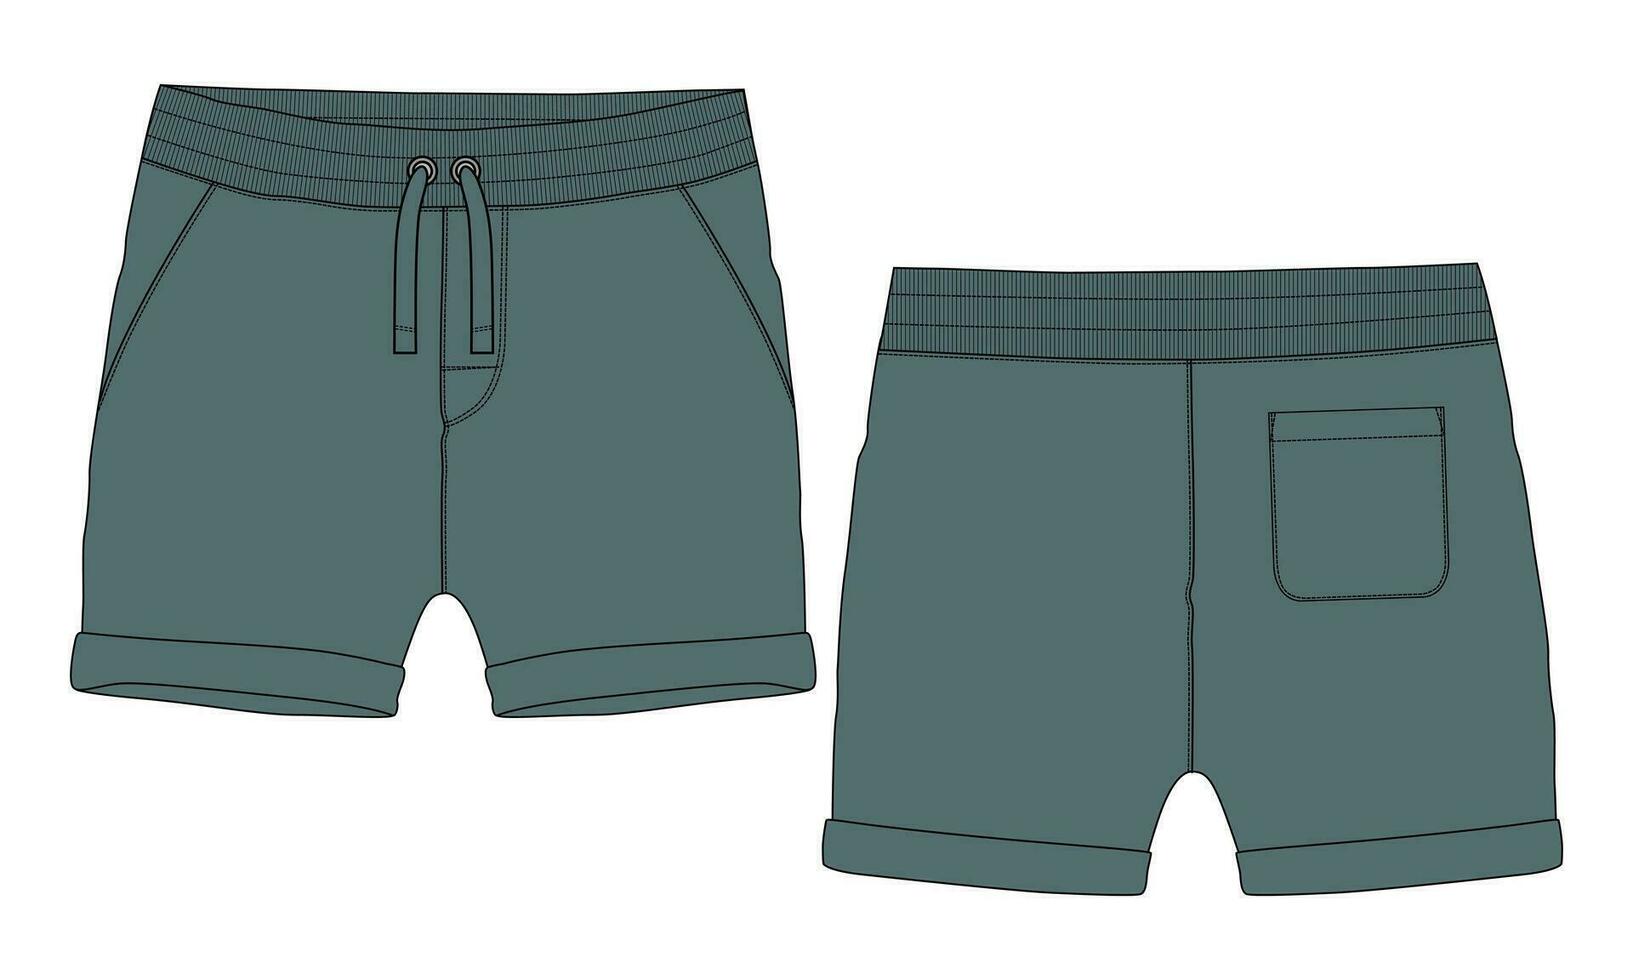 svettas shorts flämta vektor illustration mall främre och tillbaka visningar